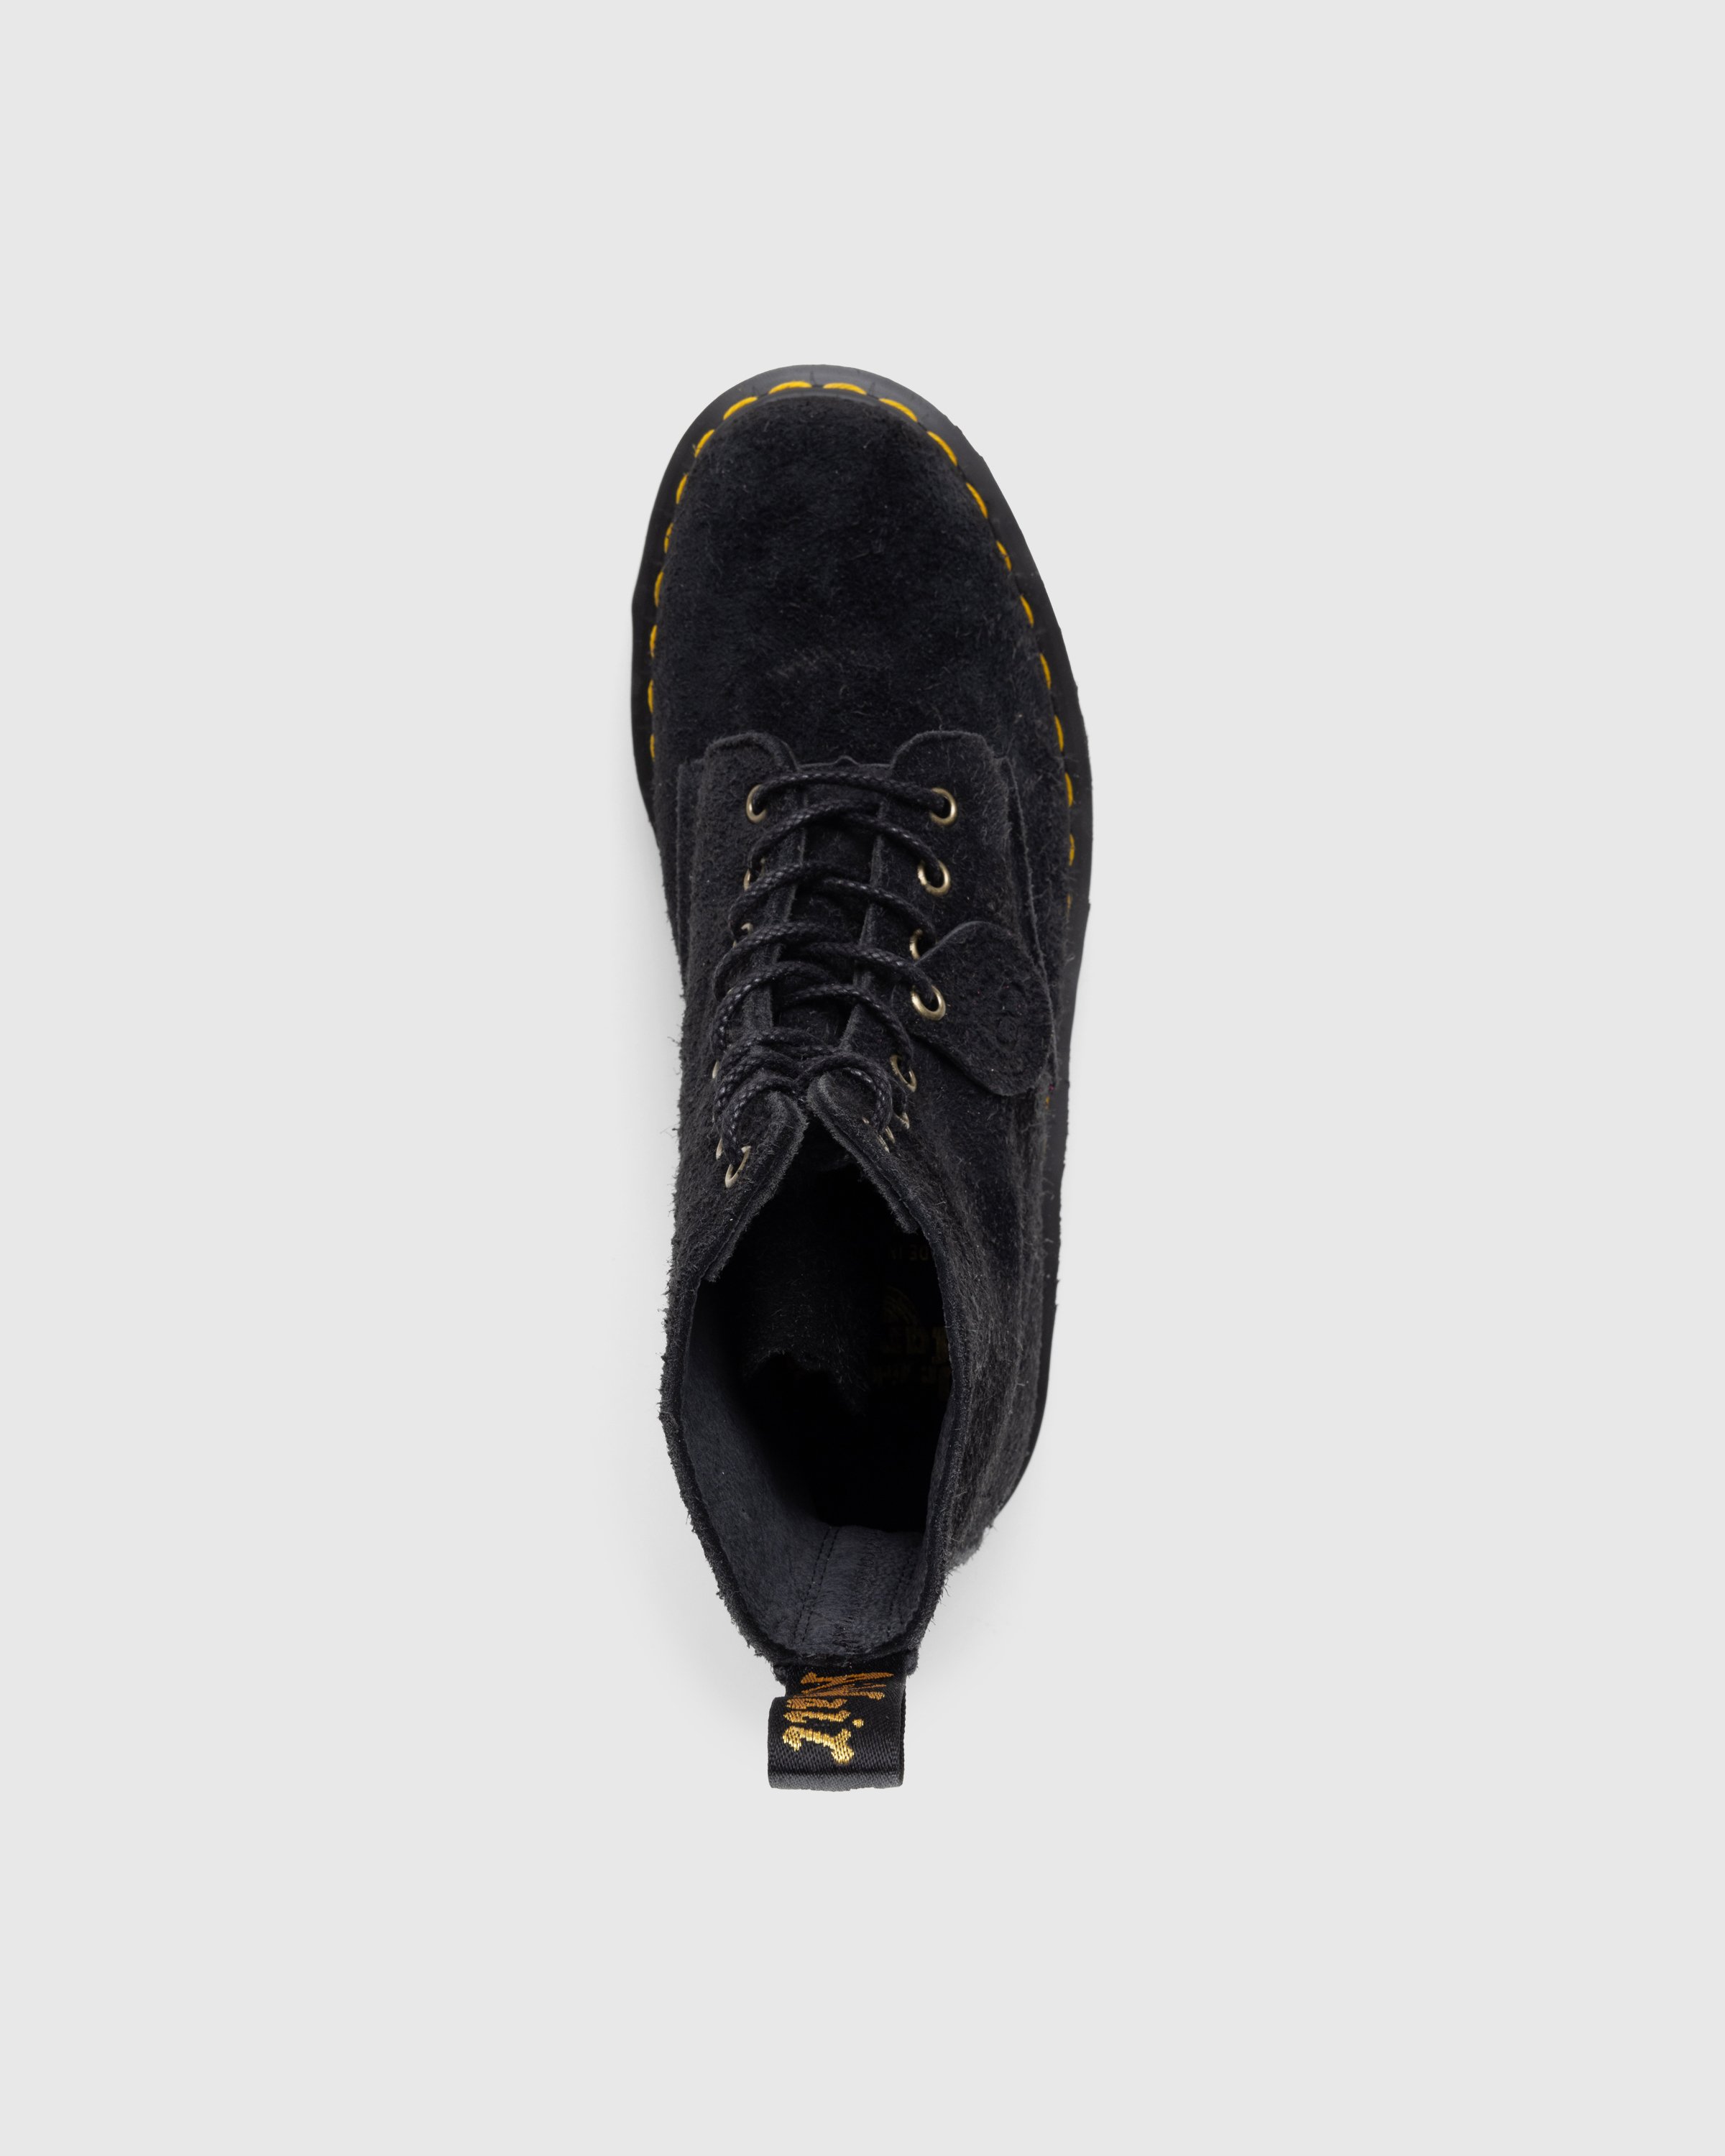 Dr. Martens - 1460 Pascal Bex Tufted Suede Black - Footwear - Black - Image 5